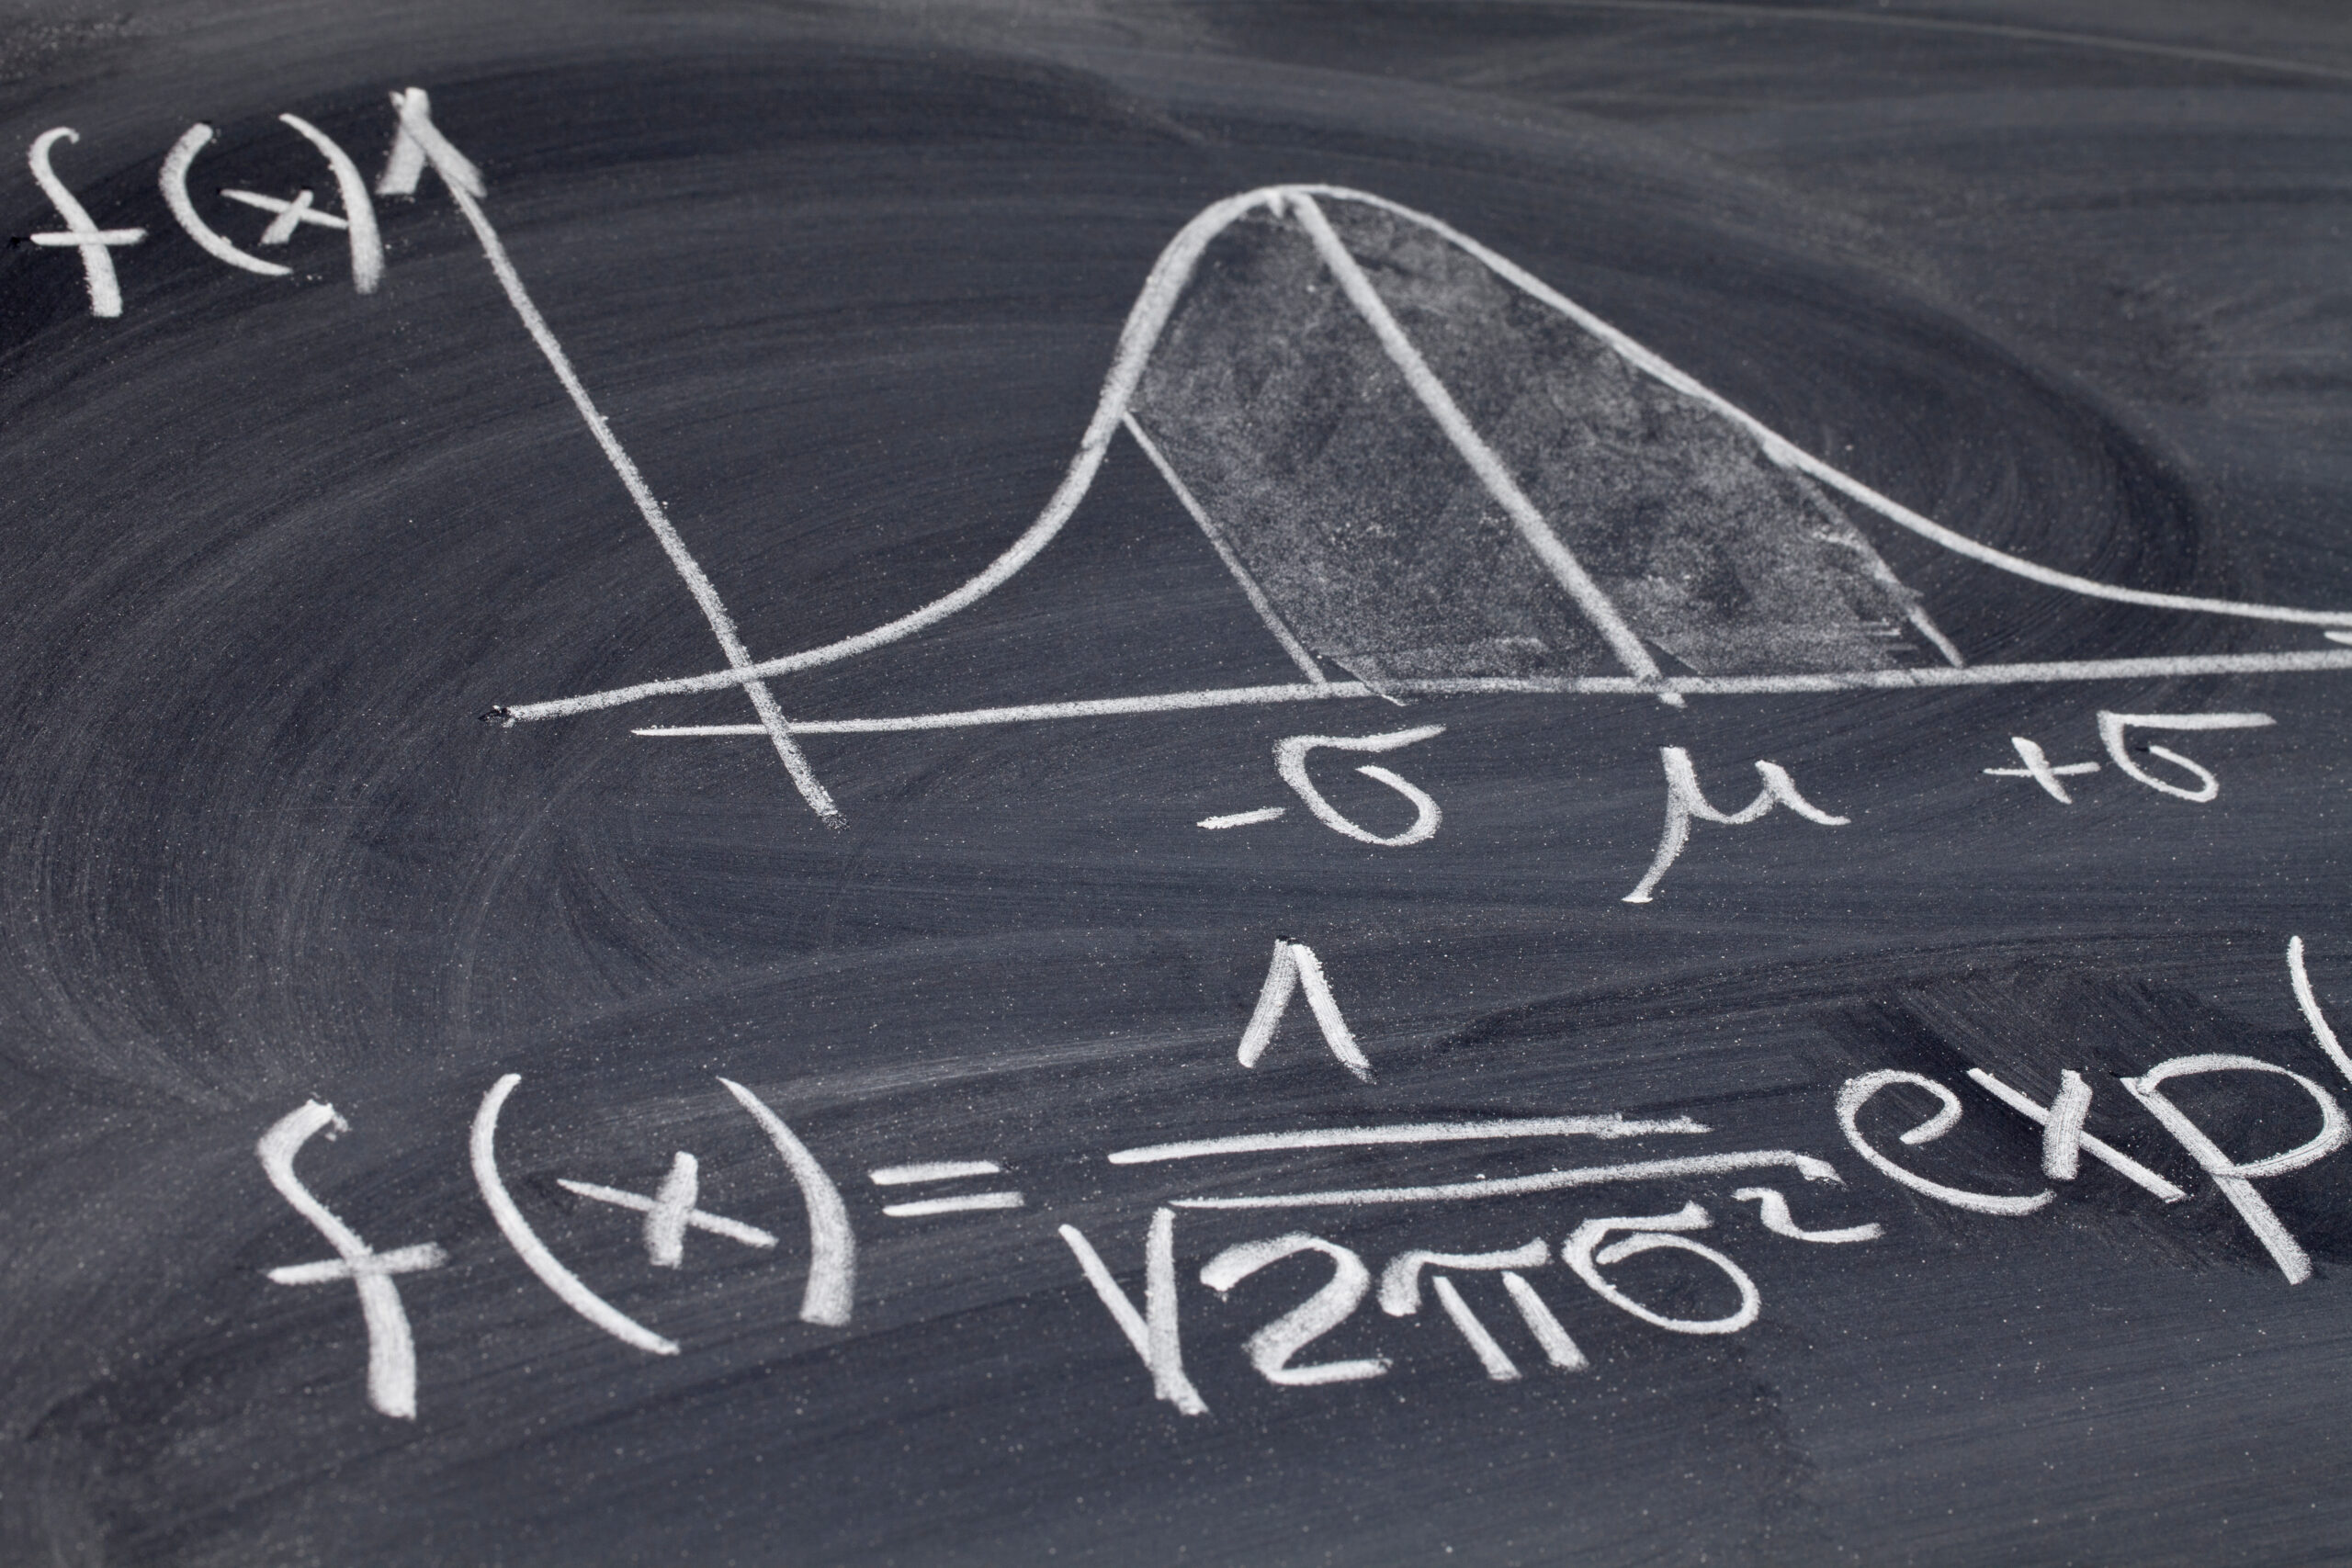 Gaussian or bell curve on a blackboard